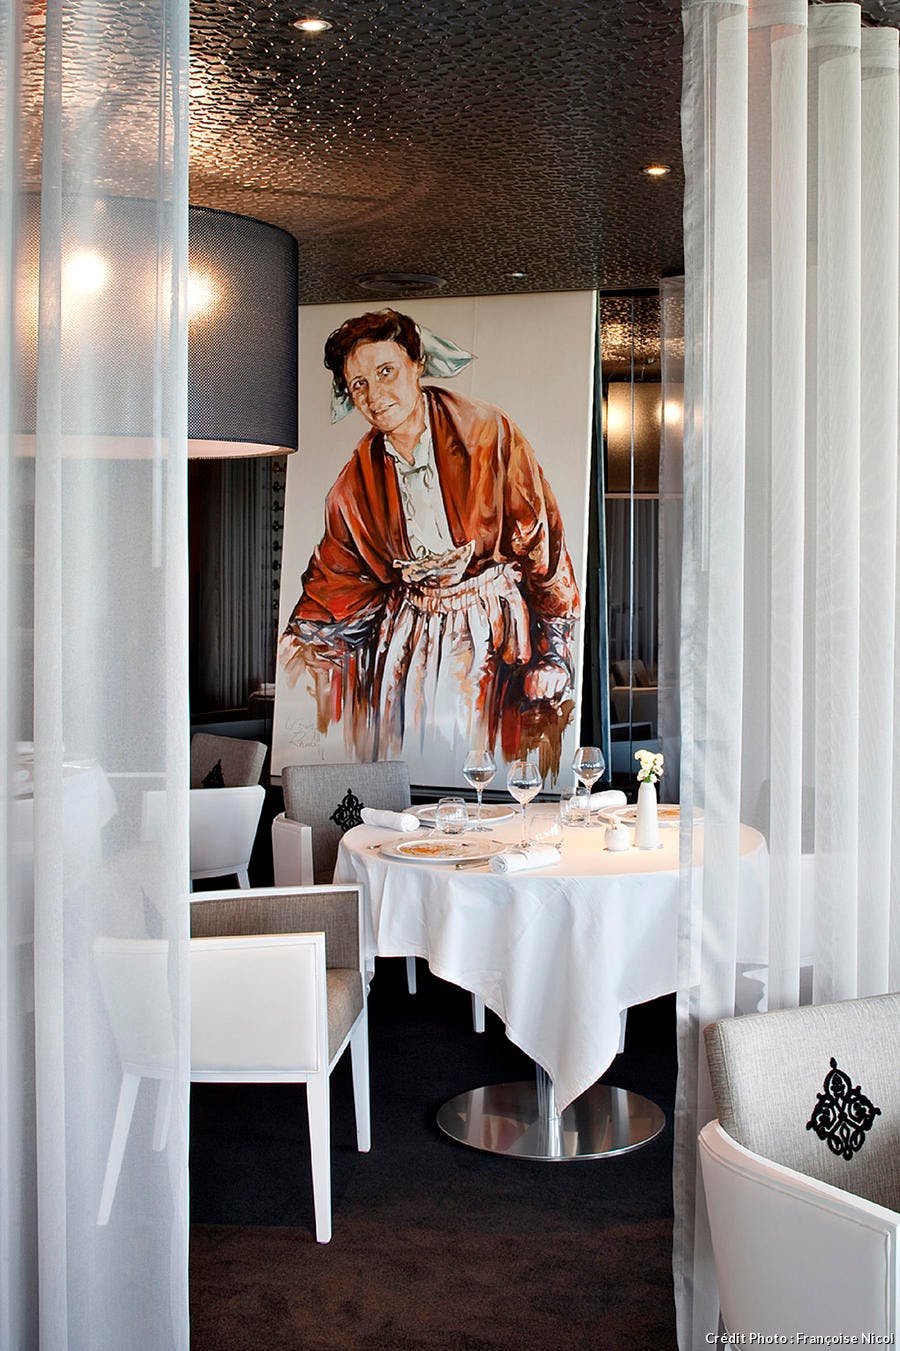 r59_abc-breton-restaurant-la-butte-salle_fn.jpg 